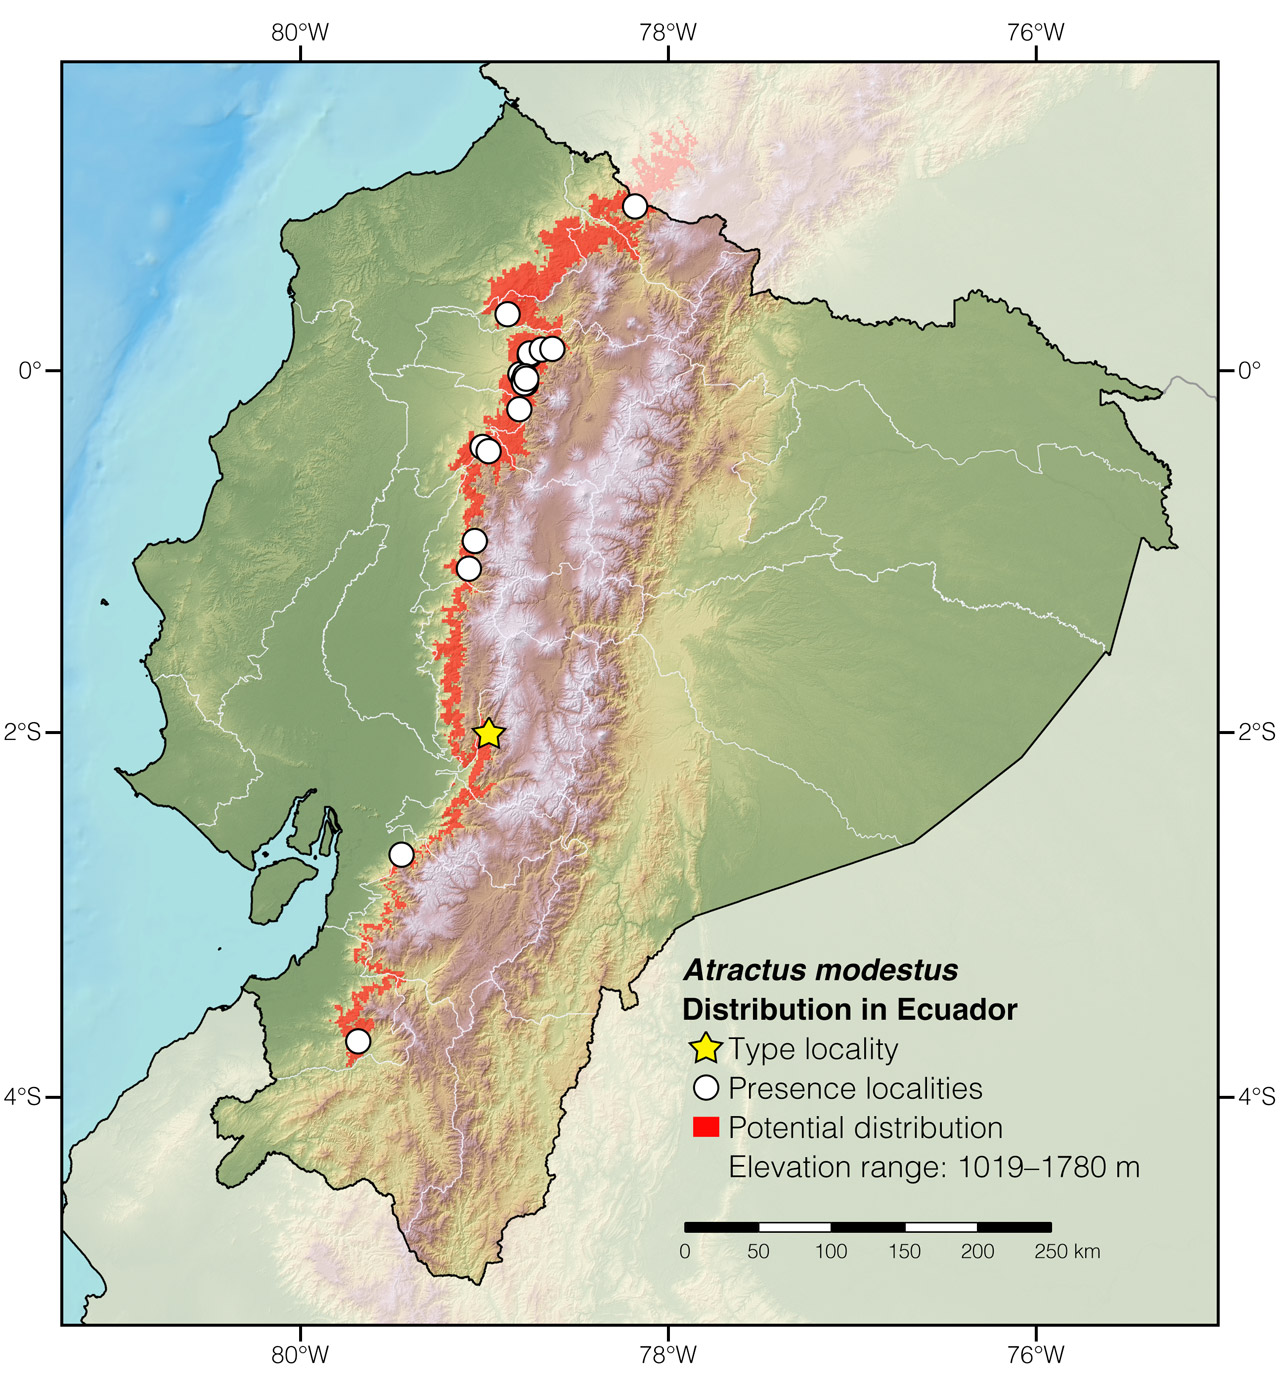 Distribution of Atractus modestus in Ecuador